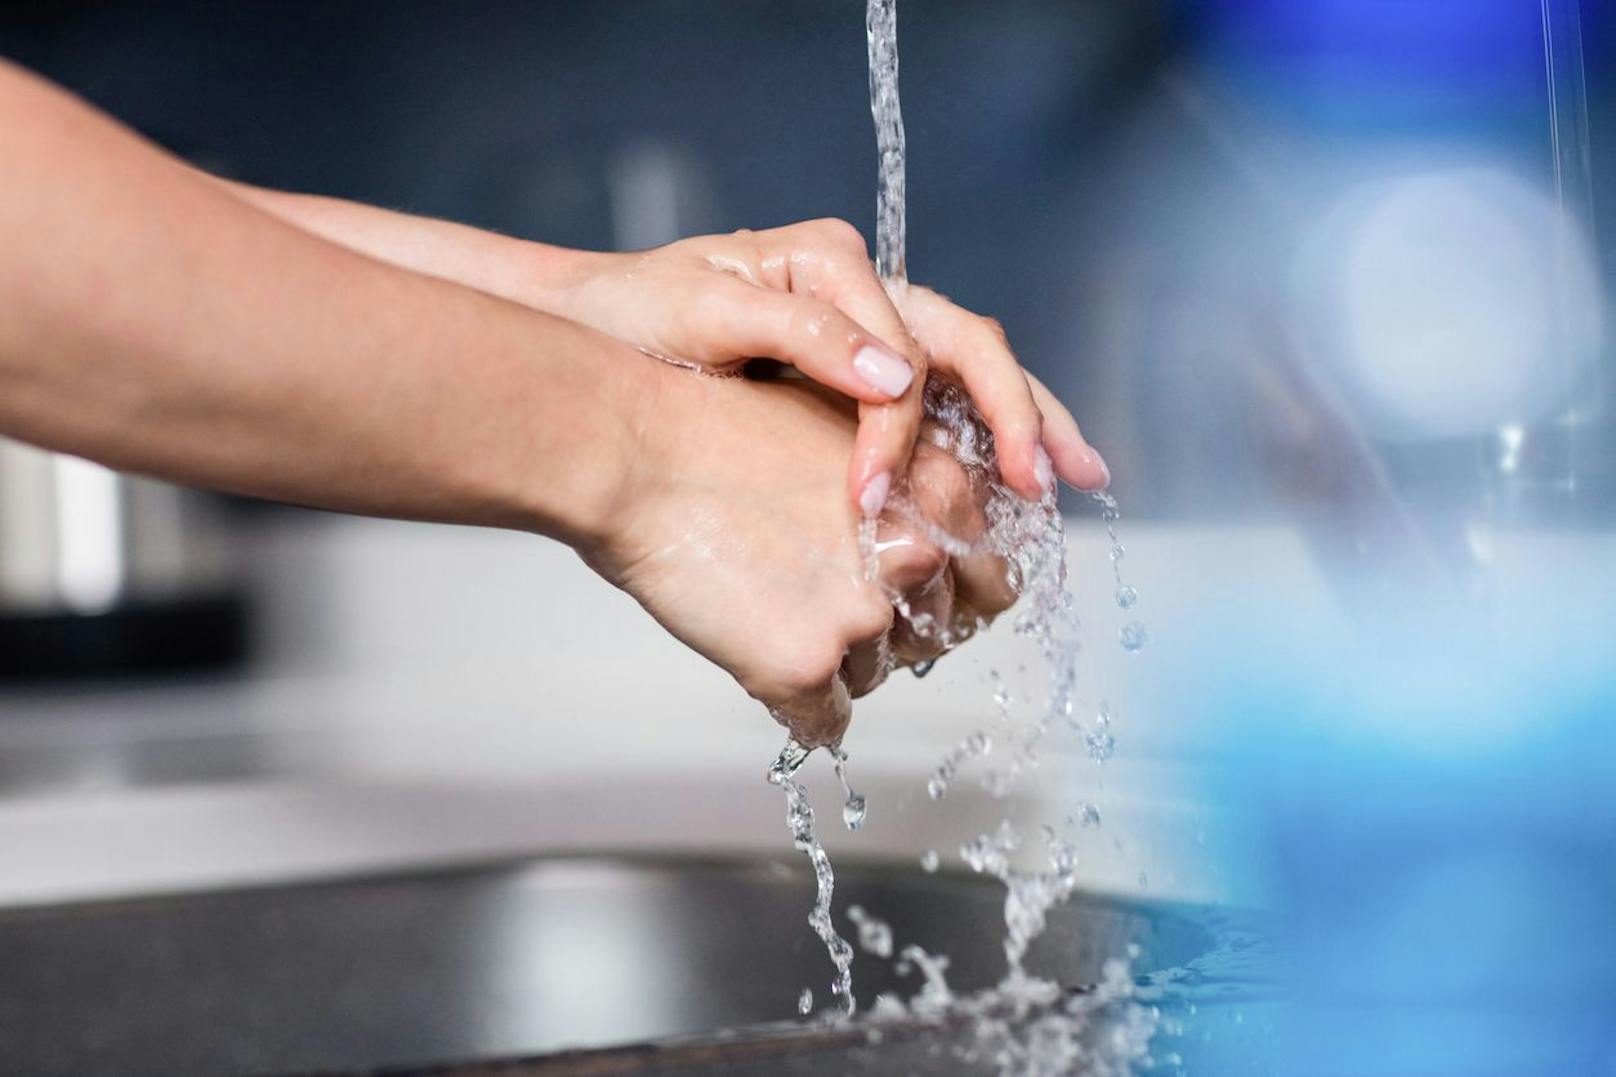 Brüchige Nägel sind auch eine Folge von Trockenheit, die durch zu viel Wasser ausgelöst wird. Wasche deine Hände nicht mit zu viel Wasser und vergiss danach nicht, dass sie ordentlich eingecremt gehören.